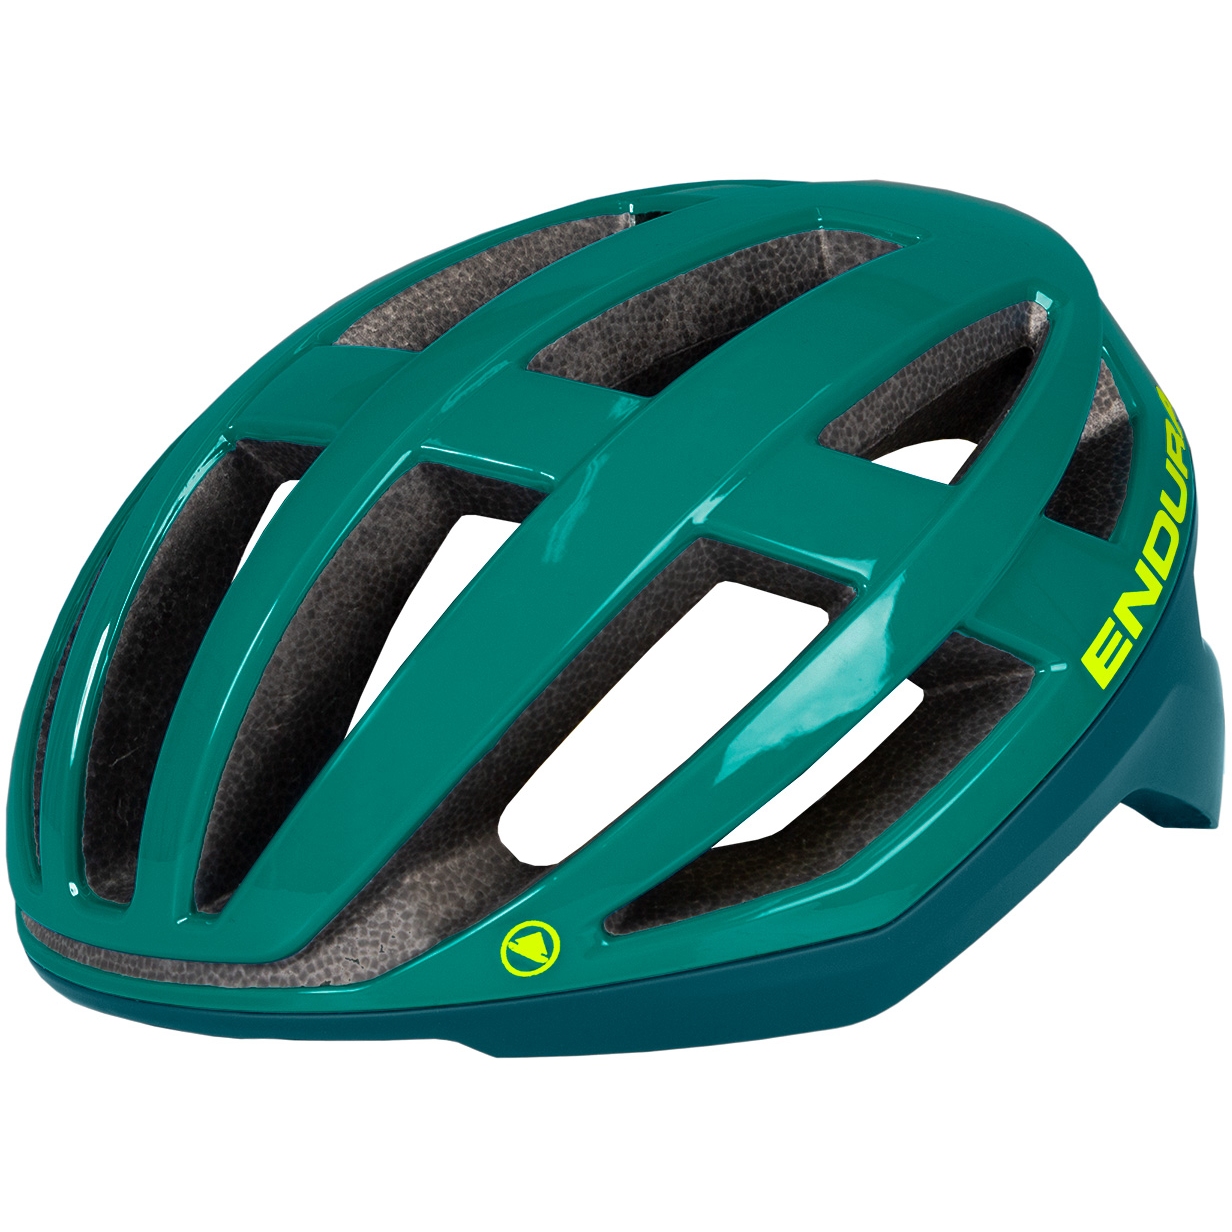 Produktbild von Endura FS260 Pro II Helm - sattes teal